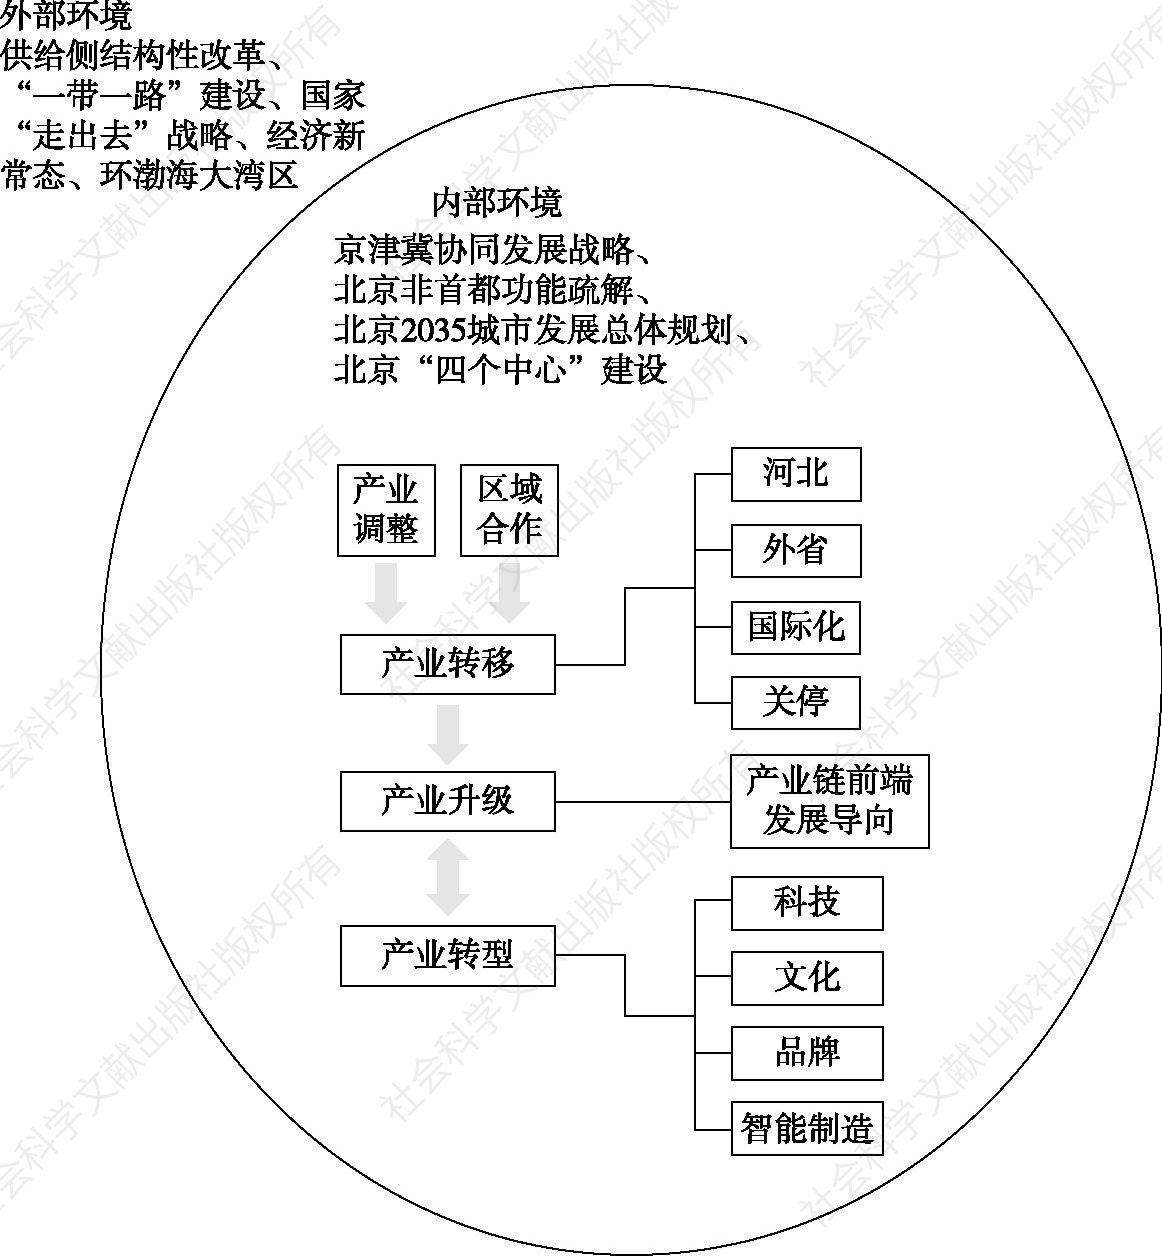 图8-1 北京服装业转型发展思考